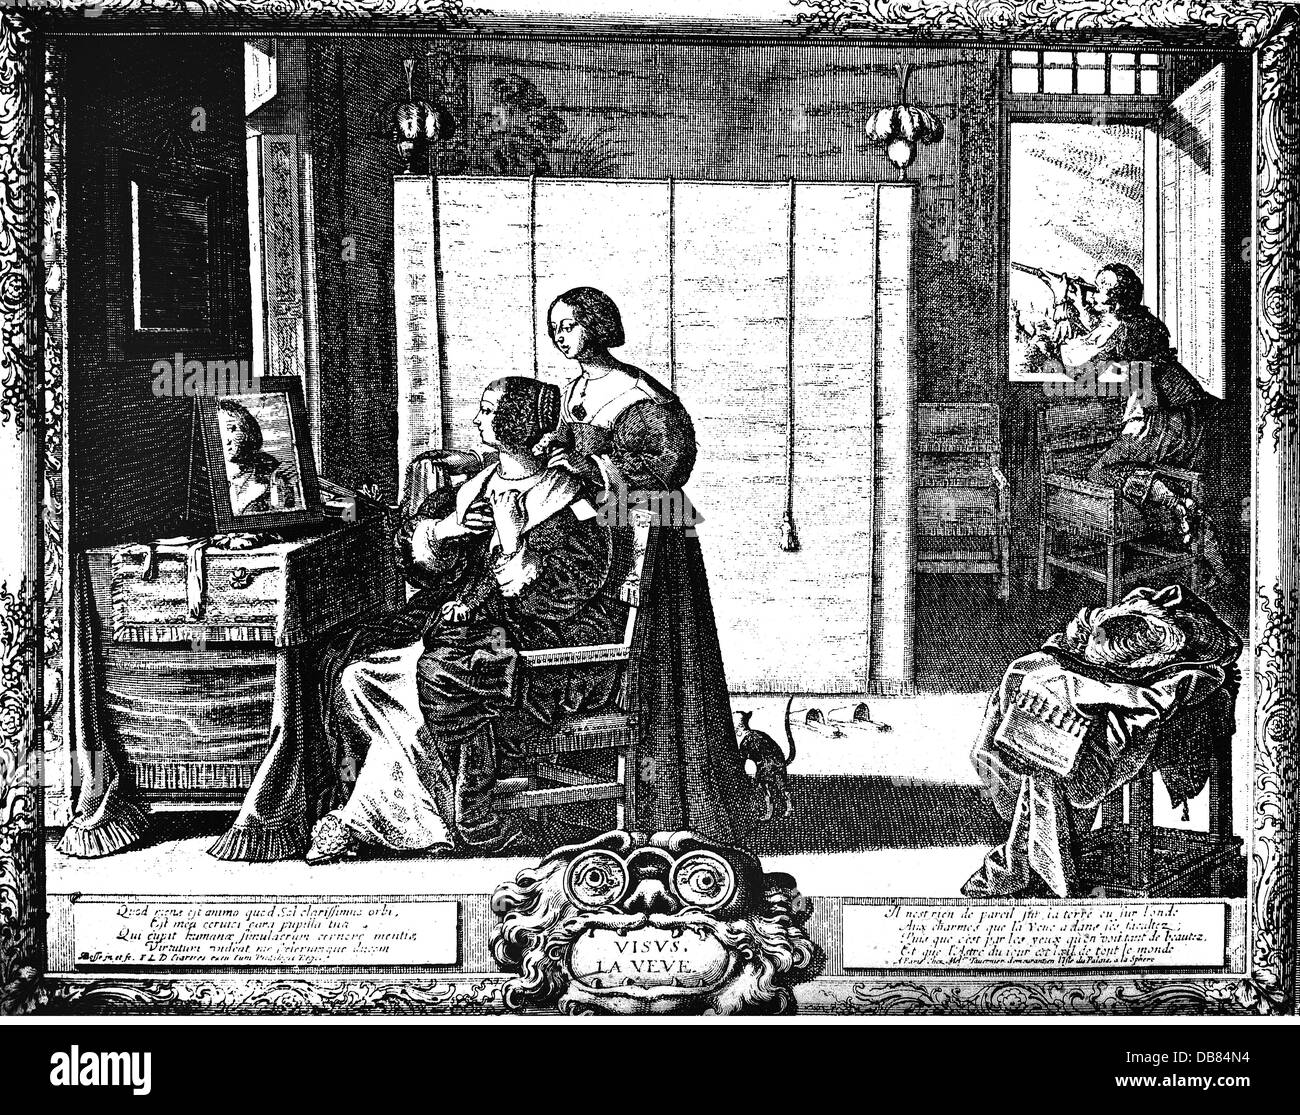 La mode, 17e siècle, la France, des vêtements de femmes, 'La Face' (La toilette), gravure sur cuivre par Abraham de bosse (1602 - 1678), Paris, milieu du 17e siècle, l'artiste n'a pas d'auteur pour être effacé Banque D'Images